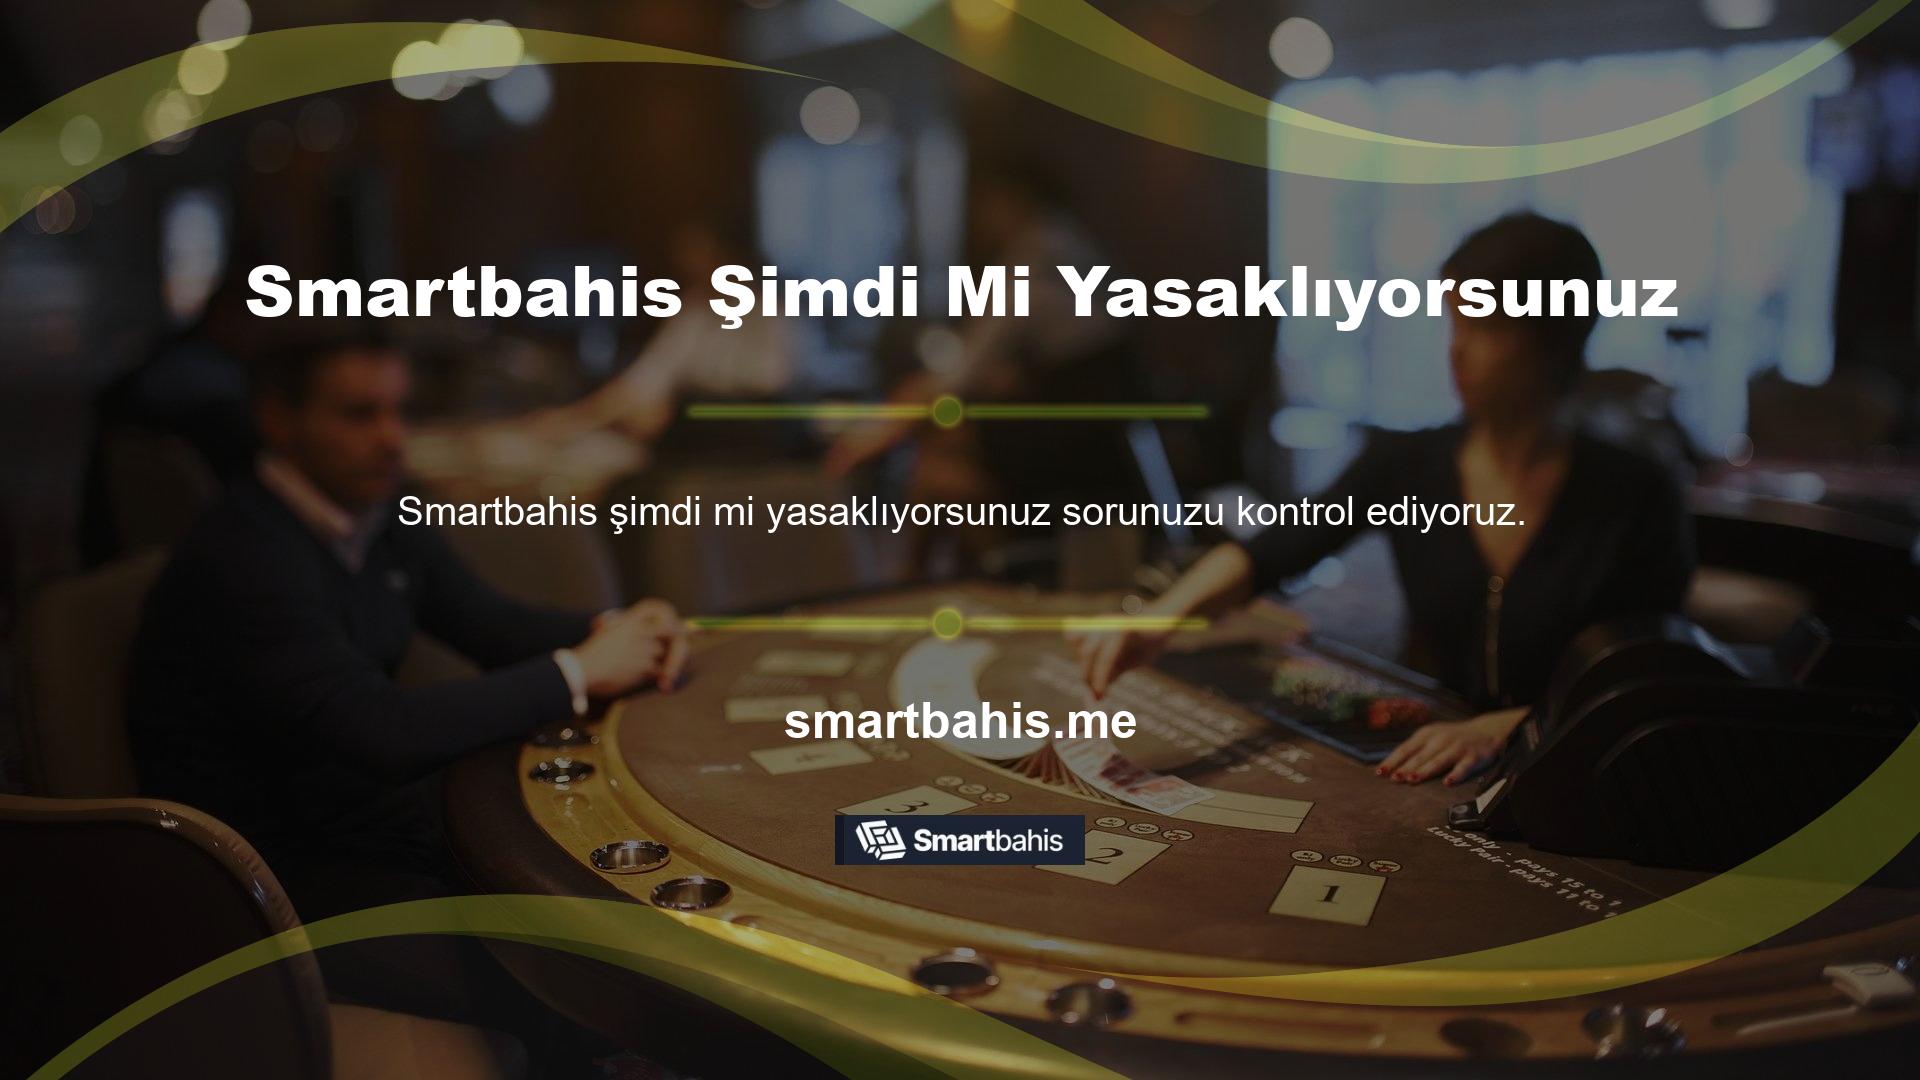 Bildiğiniz gibi Smartbahis sitesi Türkiye'de ve Avrupa'nın birçok ülkesinde faaliyet gösteren ünlü bir sitedir